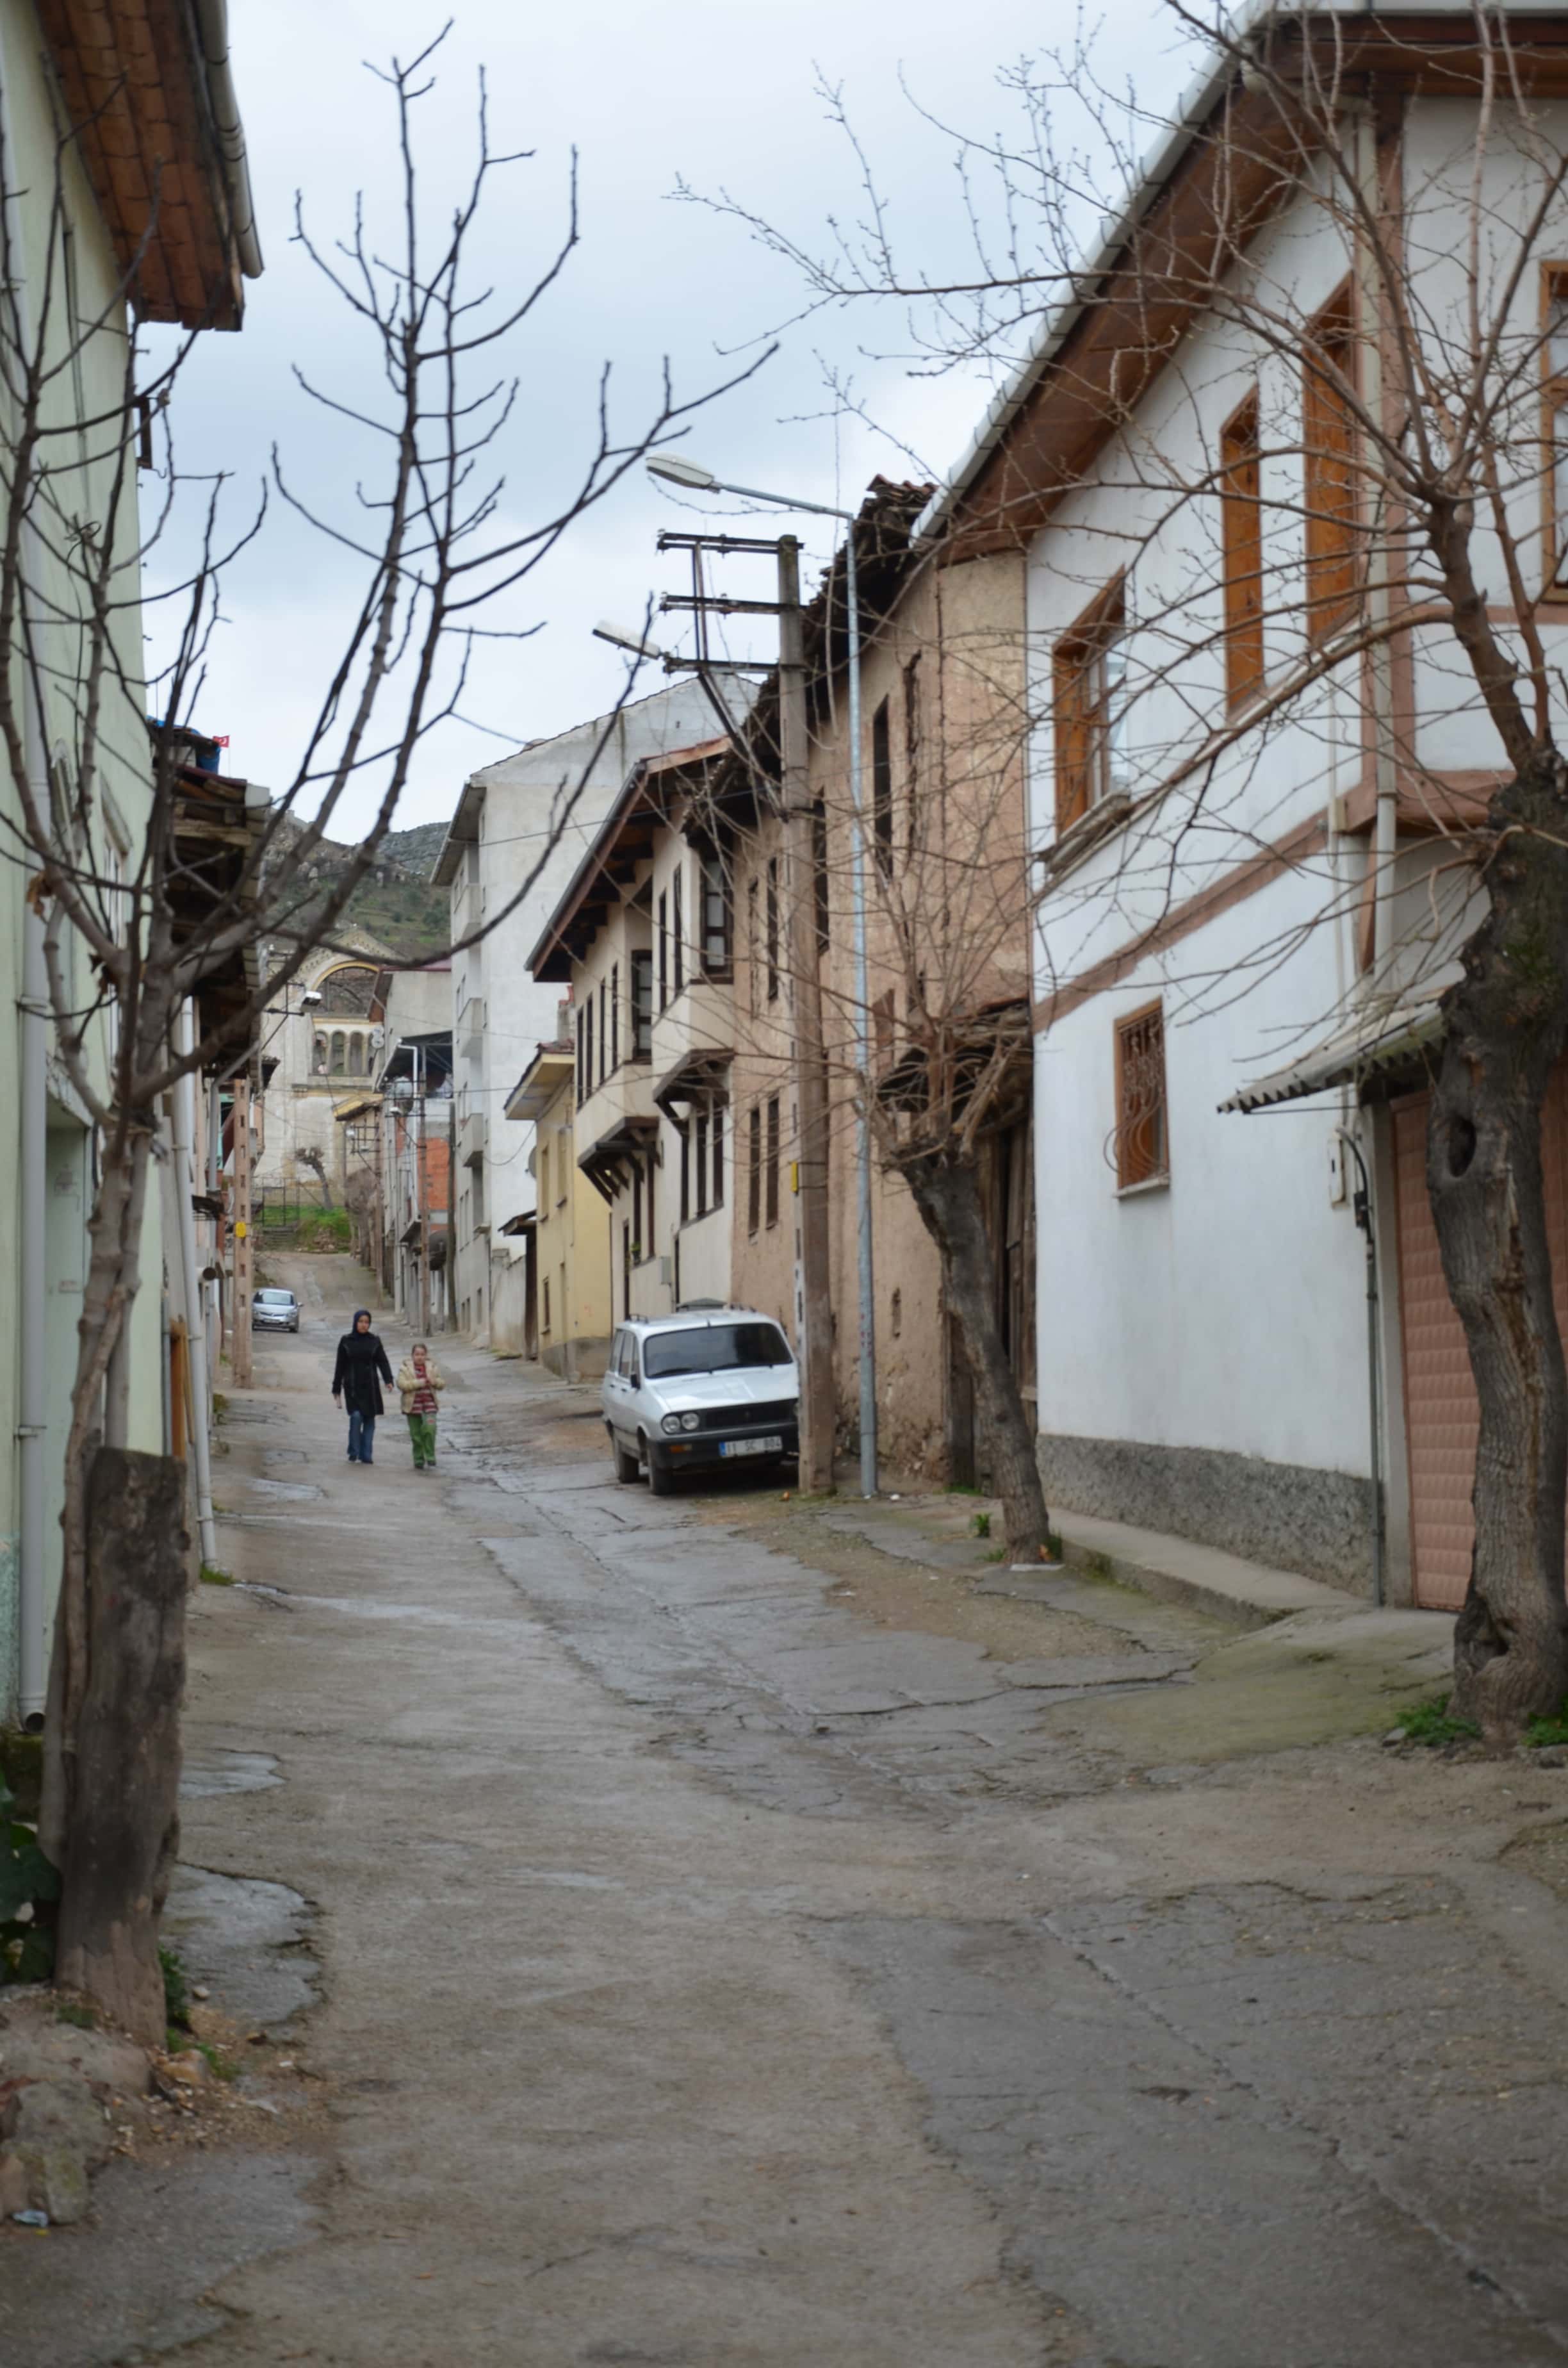 A street in Osmaneli